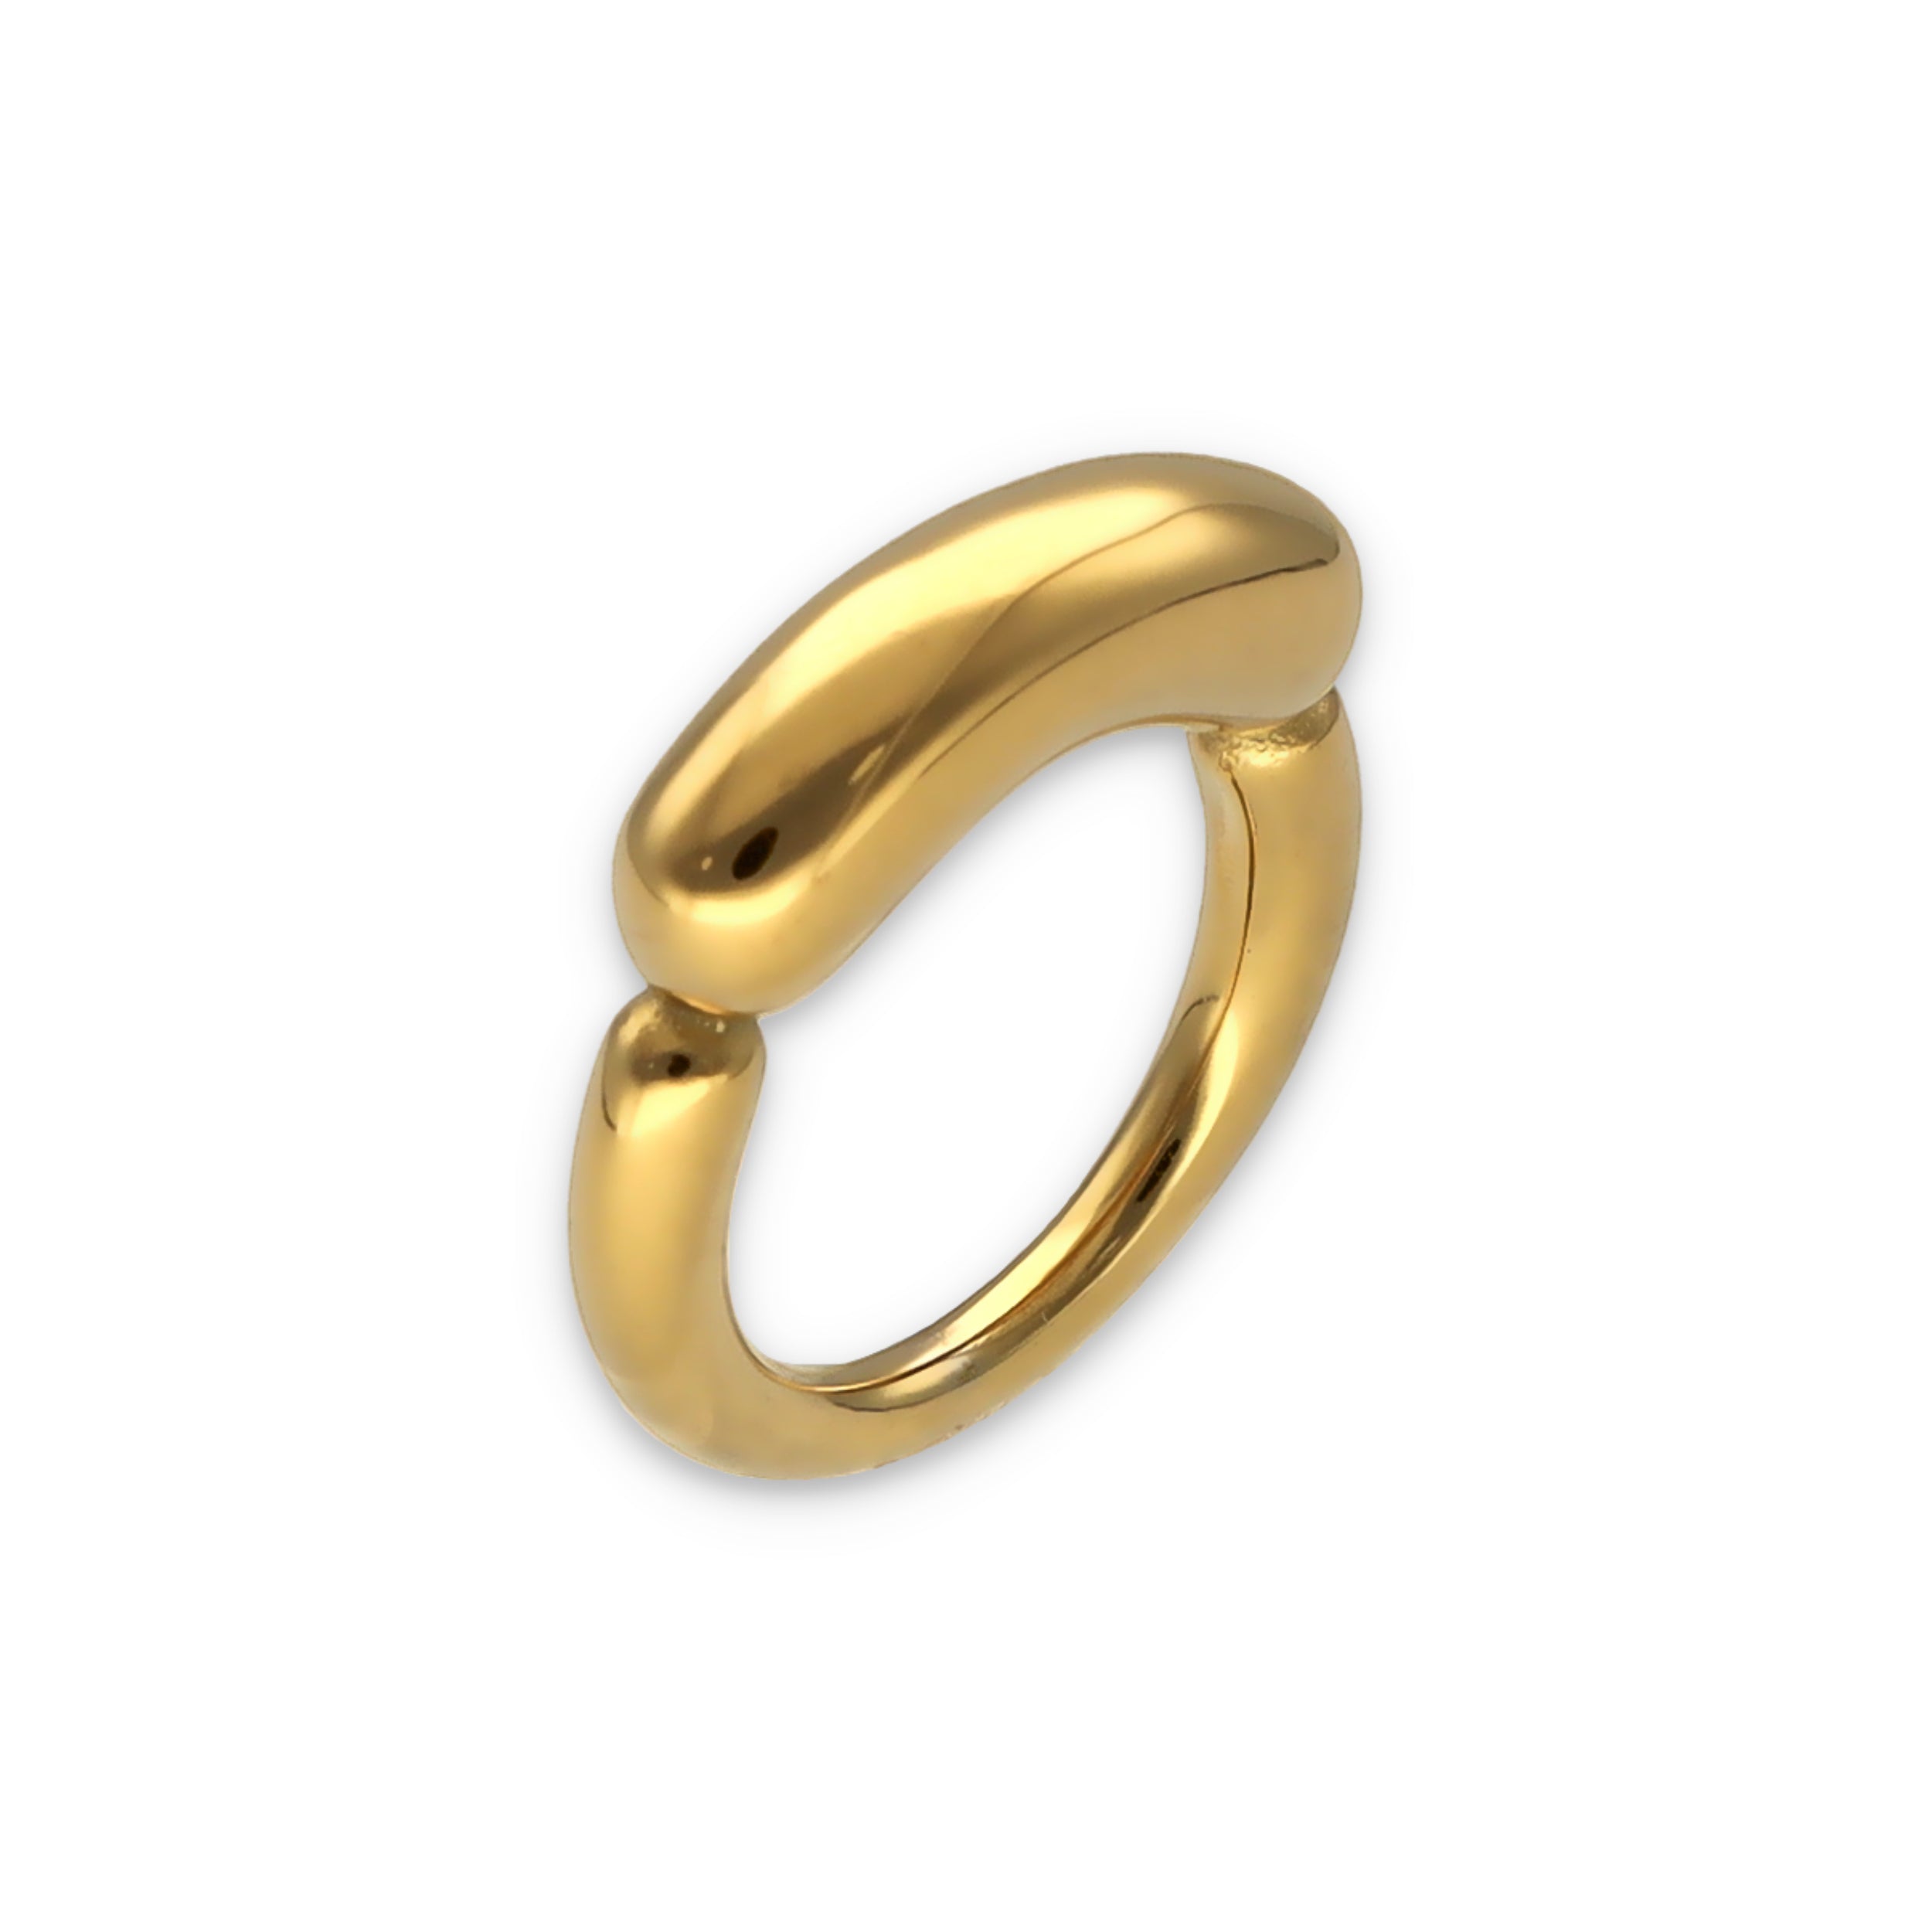 Statement-Ring von Schmucktick, vergoldeter Edelstahl, schmaler Ring mit oben aufgesetztem rundlichen Balken. 